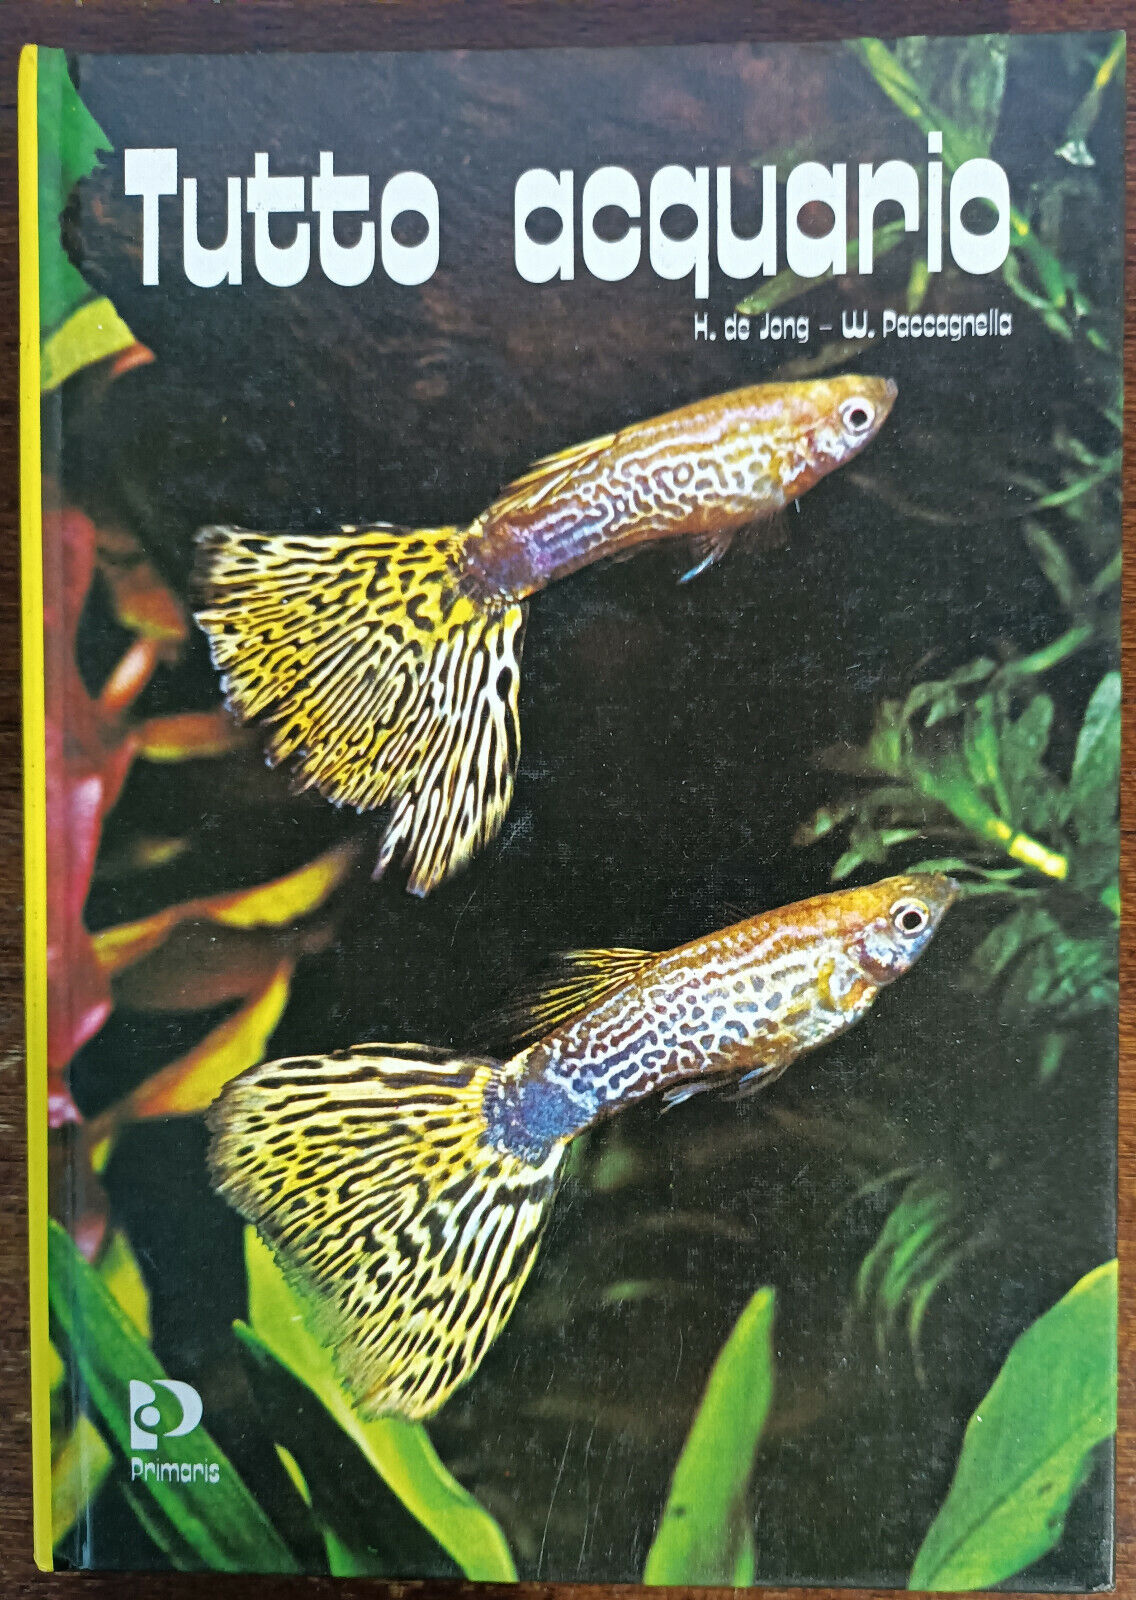 Tutto acquario - H. de Jong, W. Paccagnella - primaris, 1981 - A